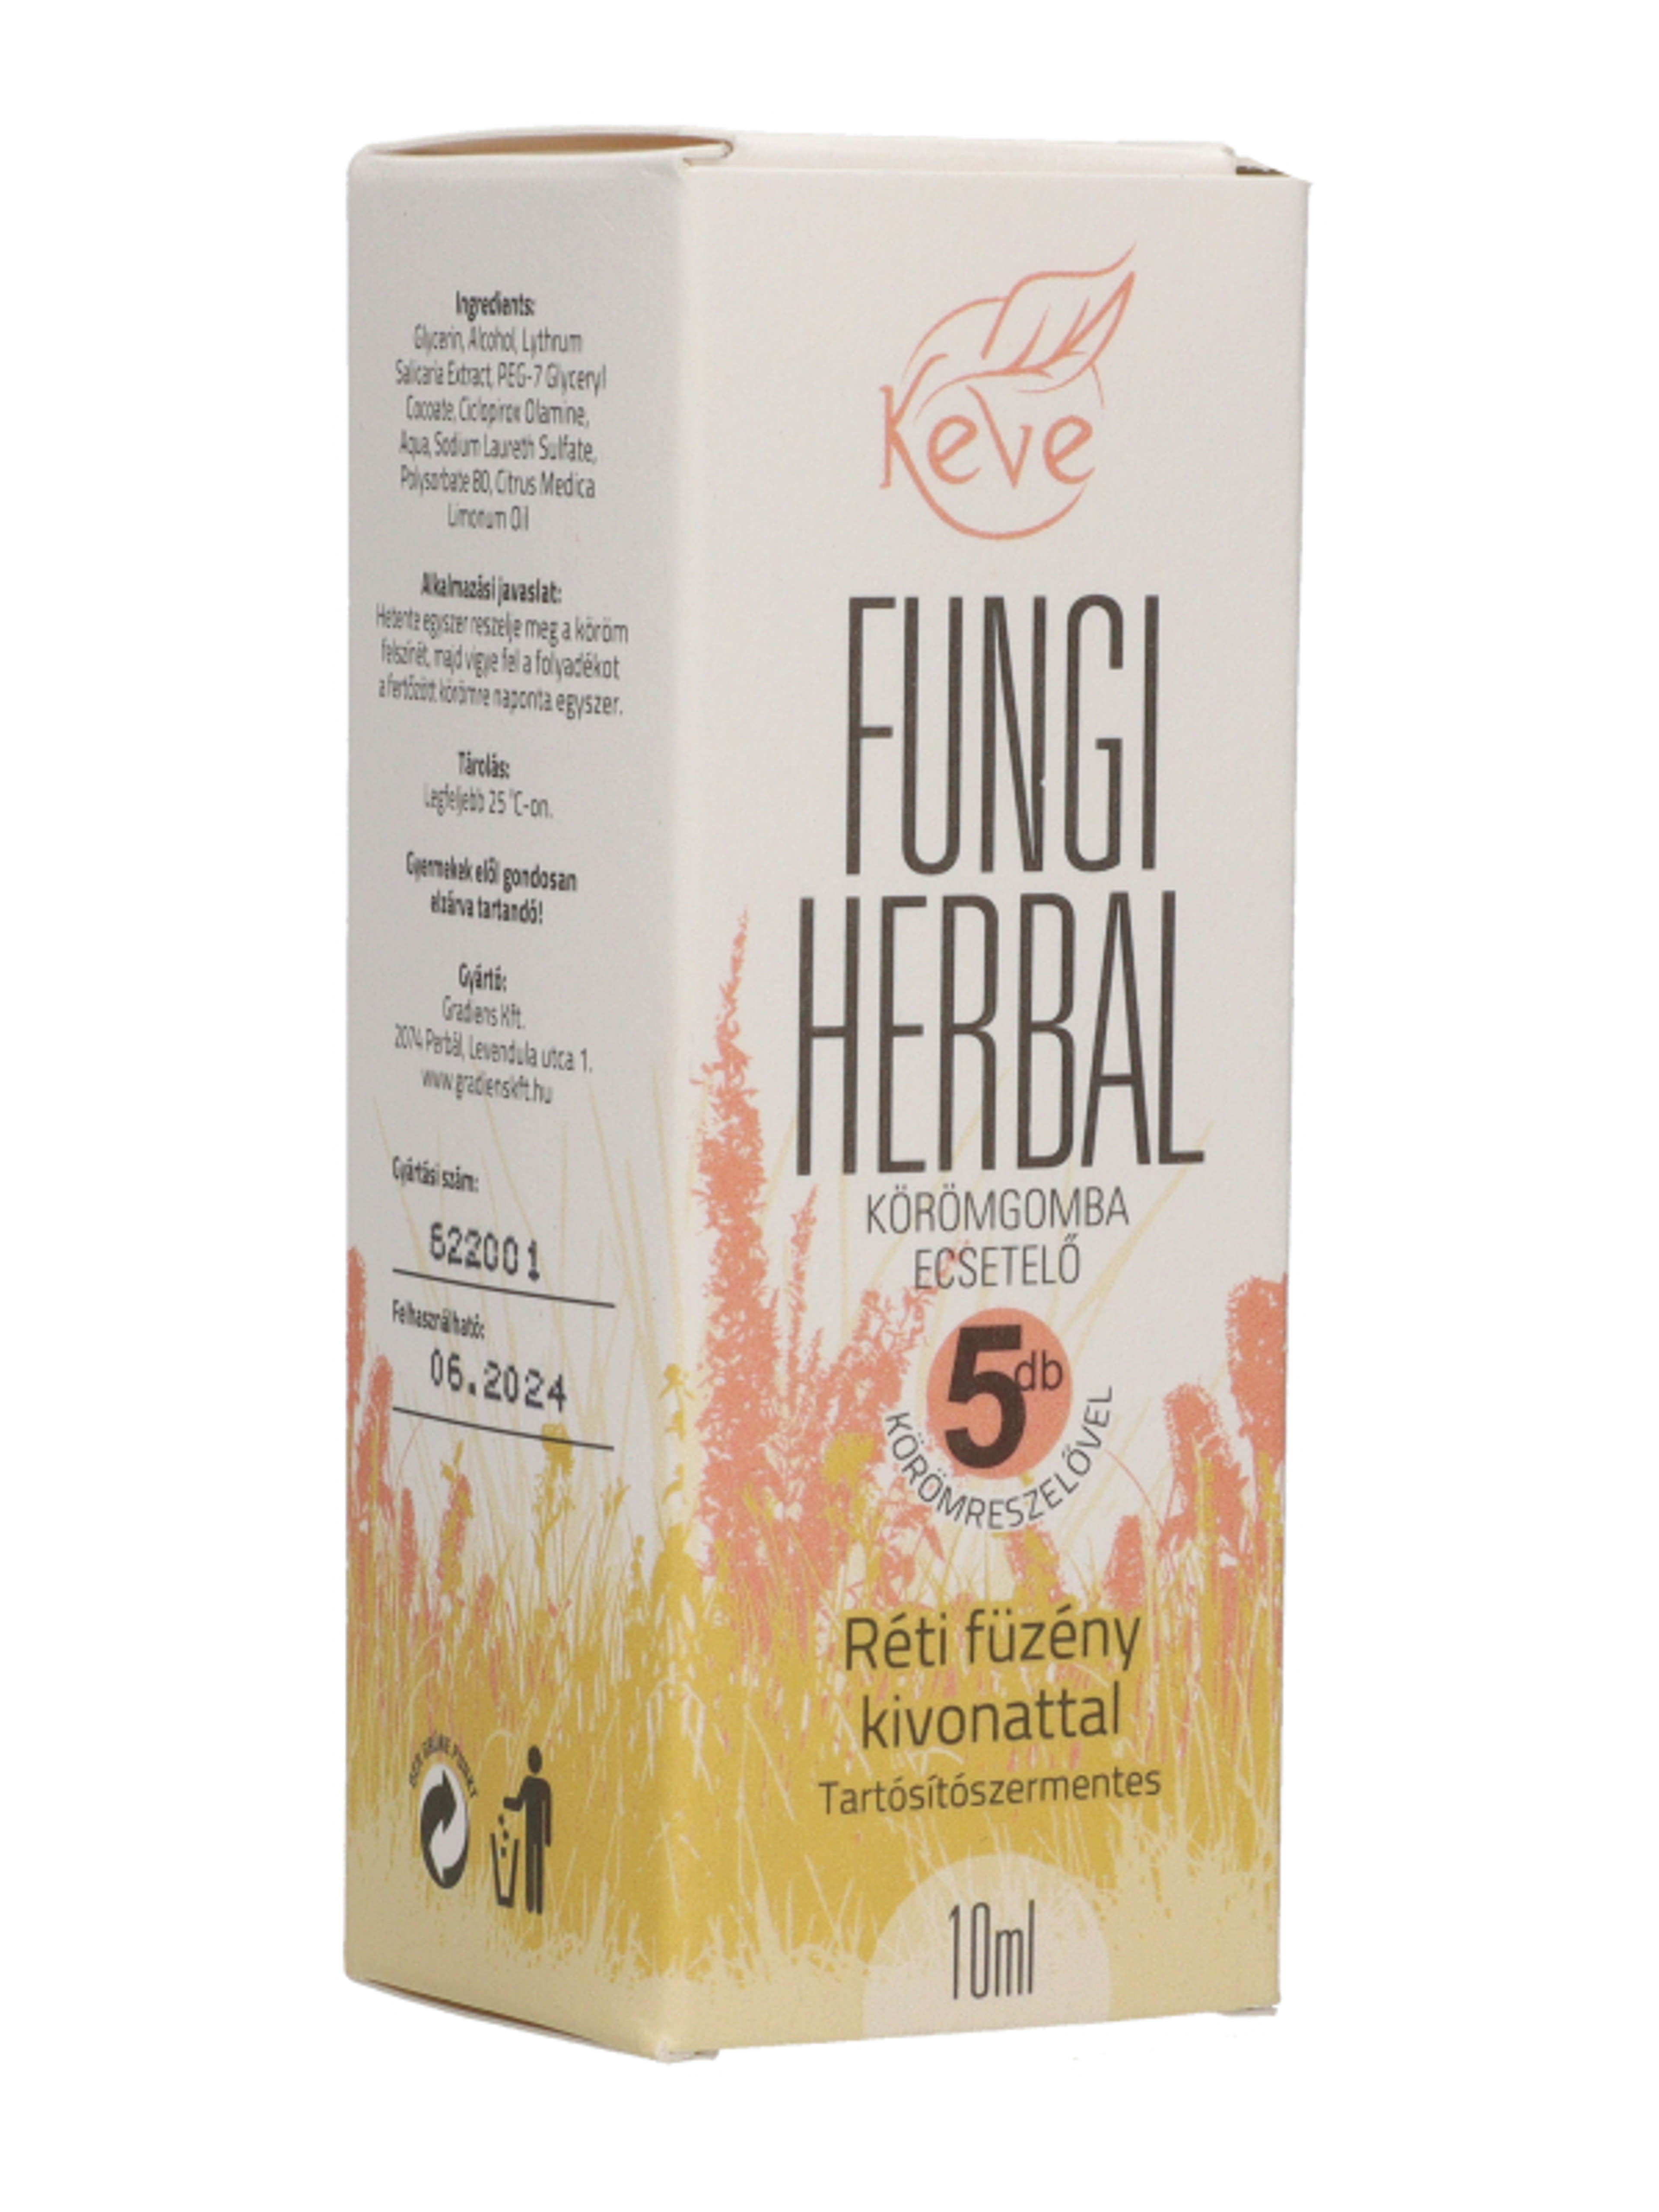 Keve Fungi Herbal körömgomba ecsetelő - 10 ml-5